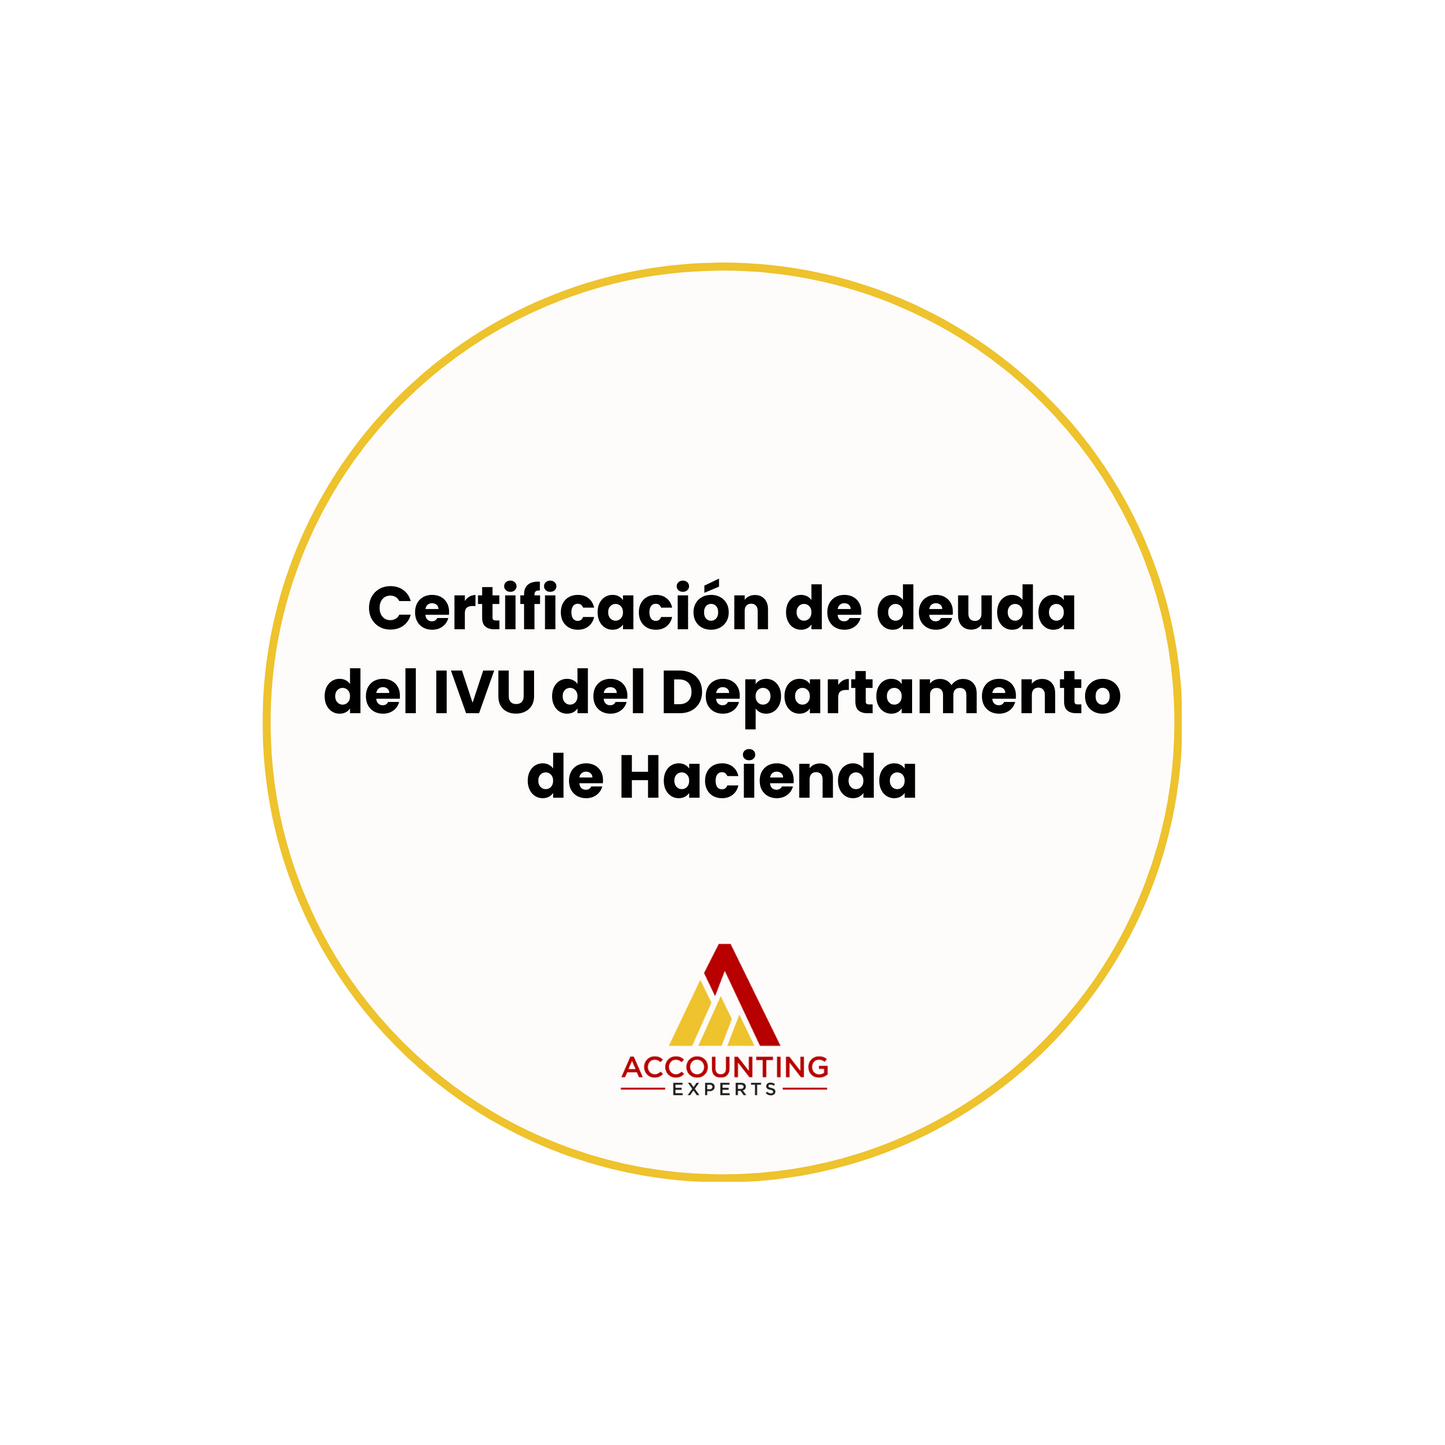 Certificación de deuda del IVU en el Departamento de Hacienda